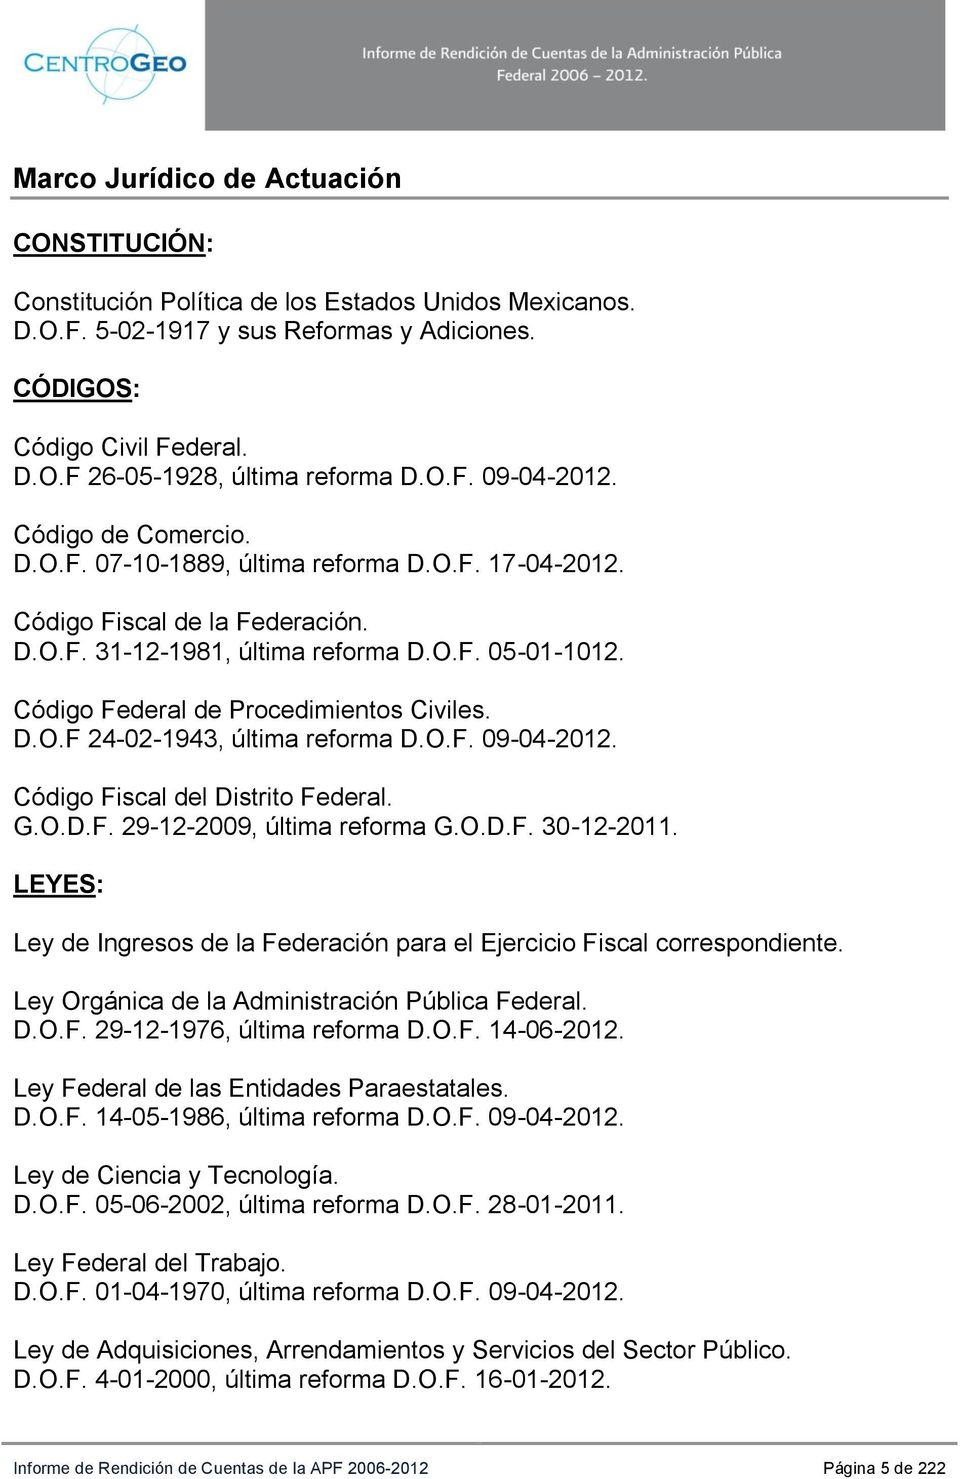 Código Federal de Procedimientos Civiles. D.O.F 24-02-1943, última reforma D.O.F. 09-04-2012. Código Fiscal del Distrito Federal. G.O.D.F. 29-12-2009, última reforma G.O.D.F. 30-12-2011.